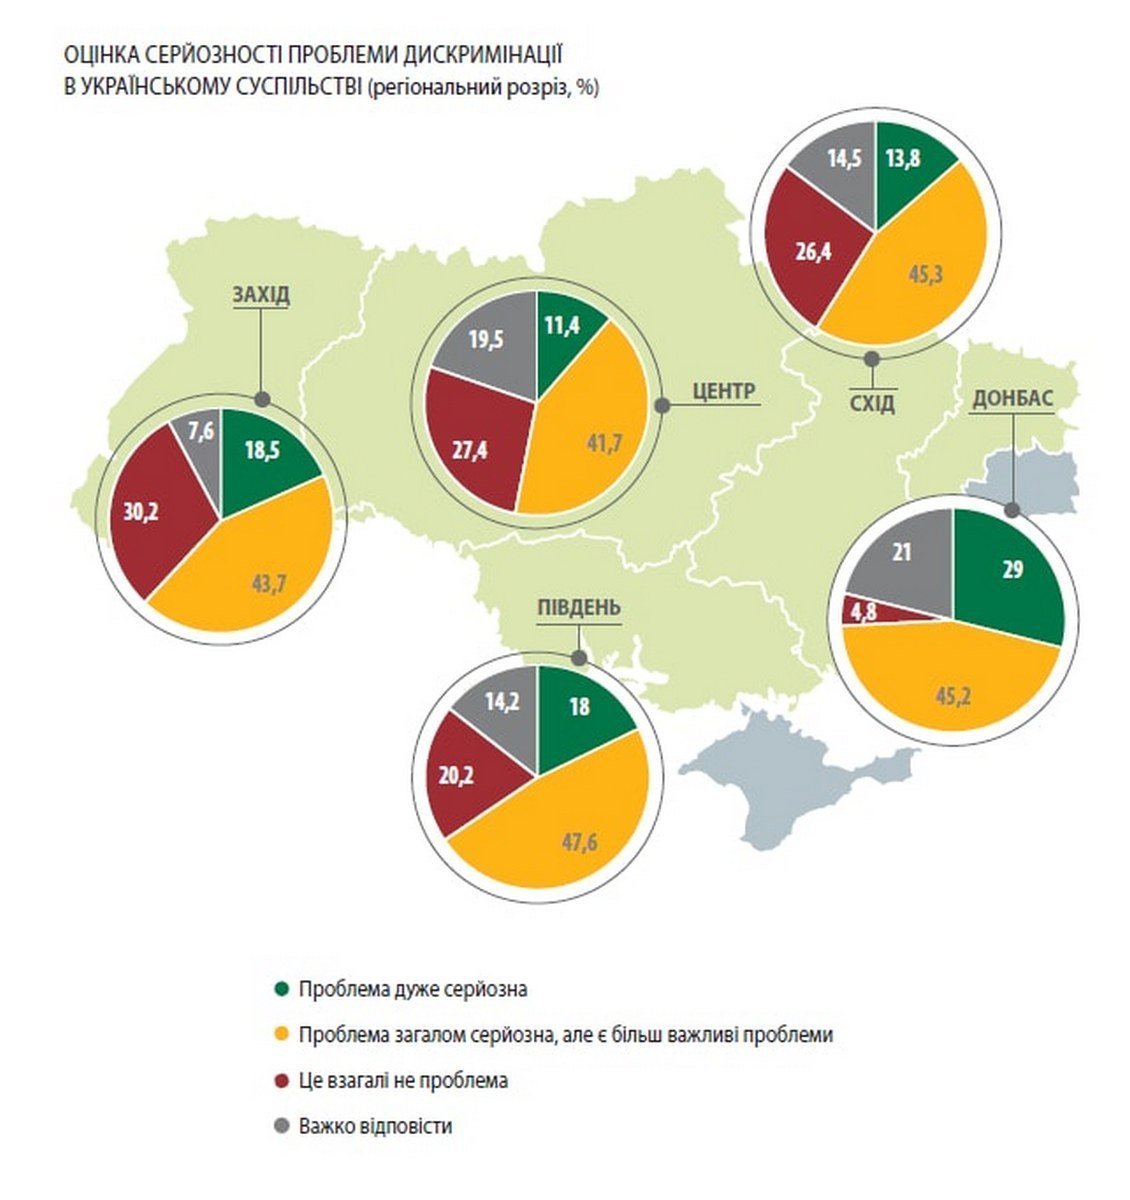 Оценка серьезности проблемы дискриминации в украинском обществе